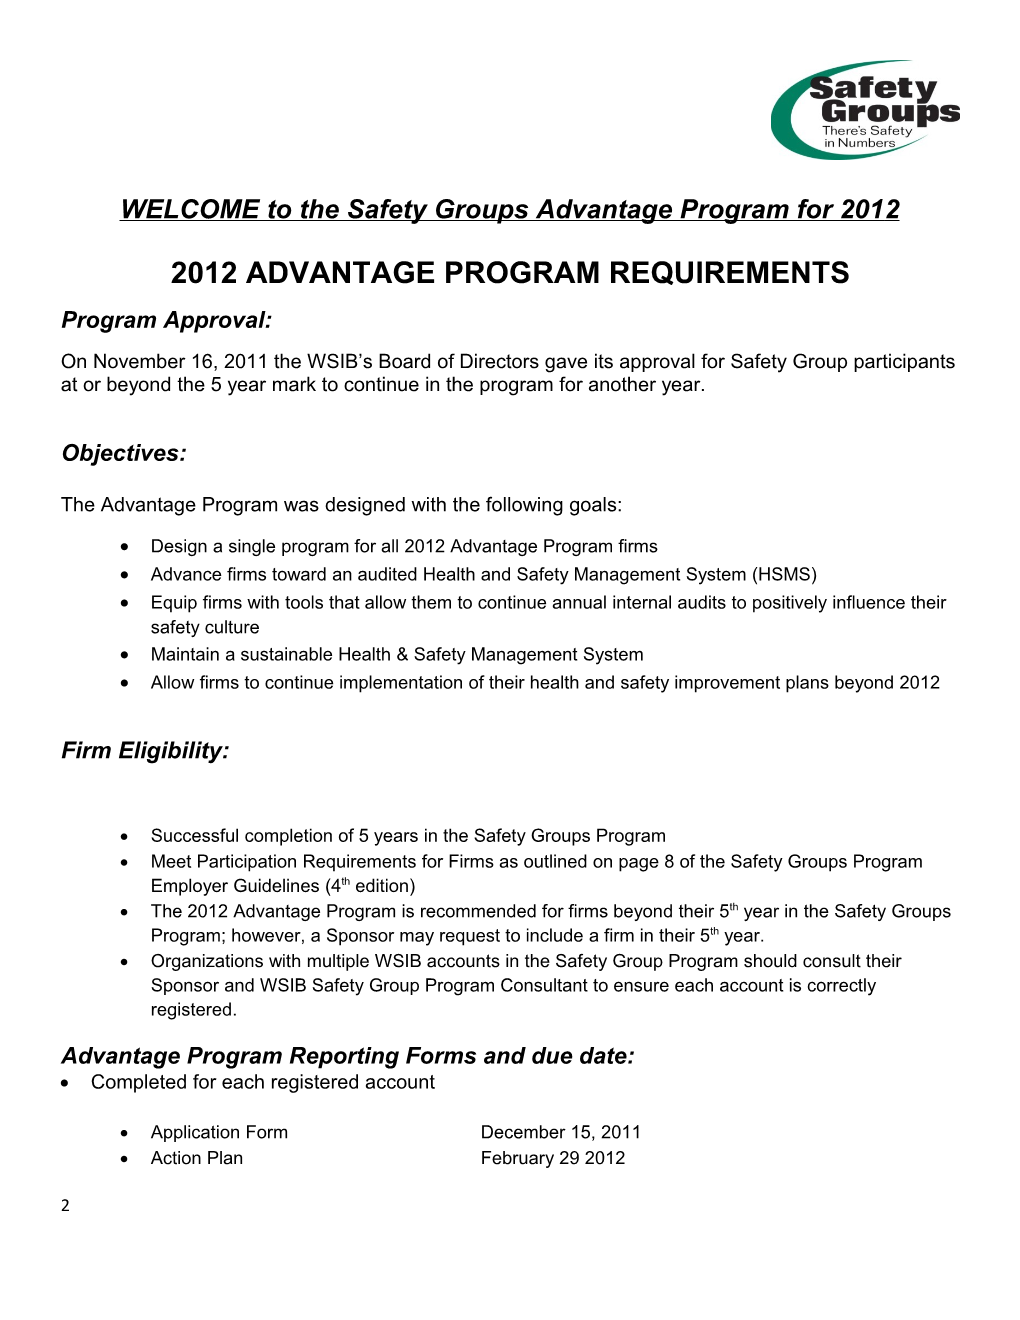 Safety Groups Advantage Program